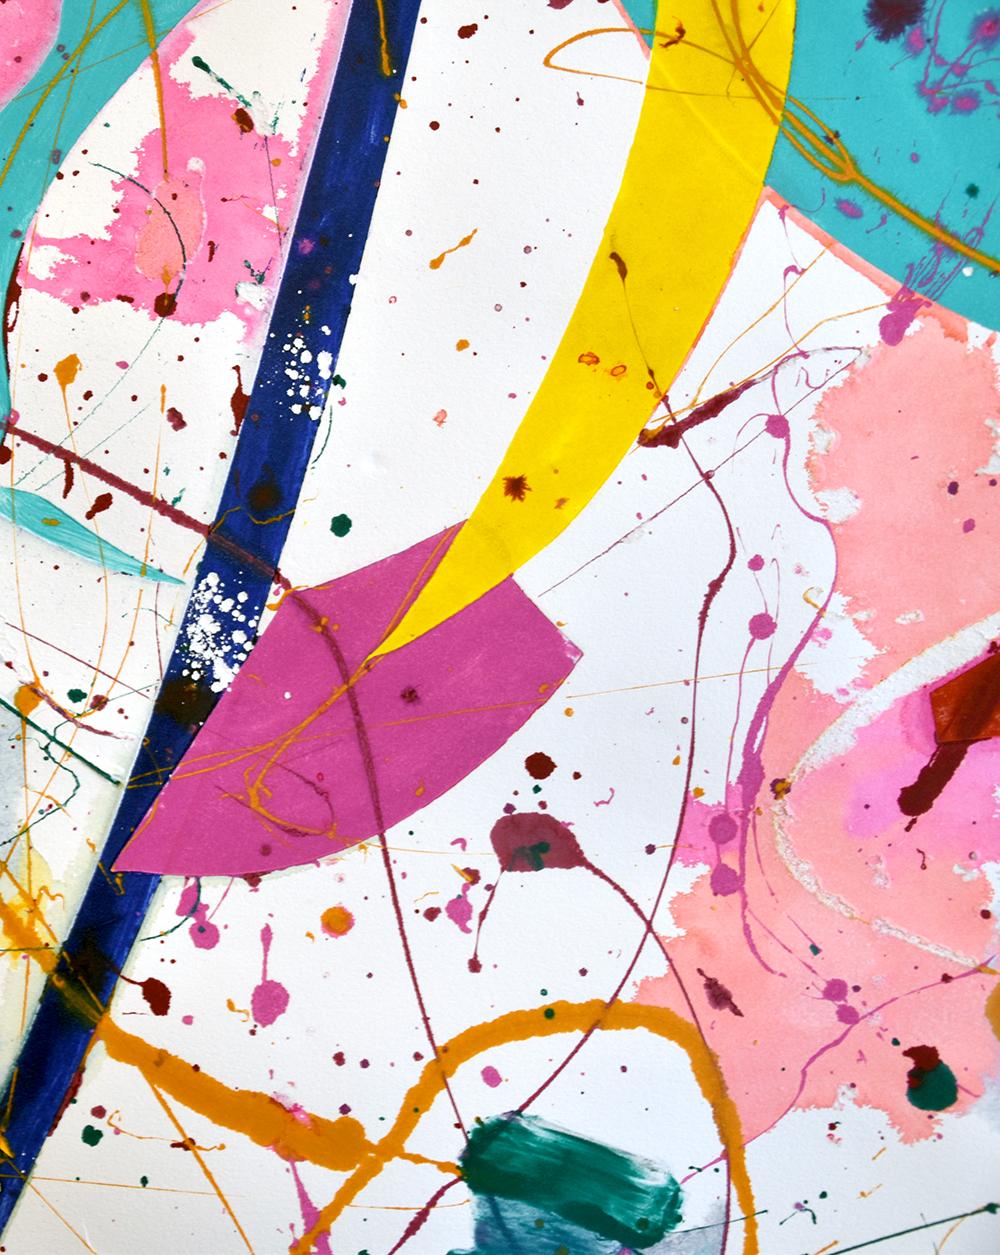 Créé en 1986, Sam Francis Untitled, 1986 est un monotype en couleurs sur papier fait main. Cette œuvre est estampillée de la signature de l'artiste et du cachet de Sam Francis Estate au verso.

Sam Francis Untitled, 1986 se distingue de l'ensemble